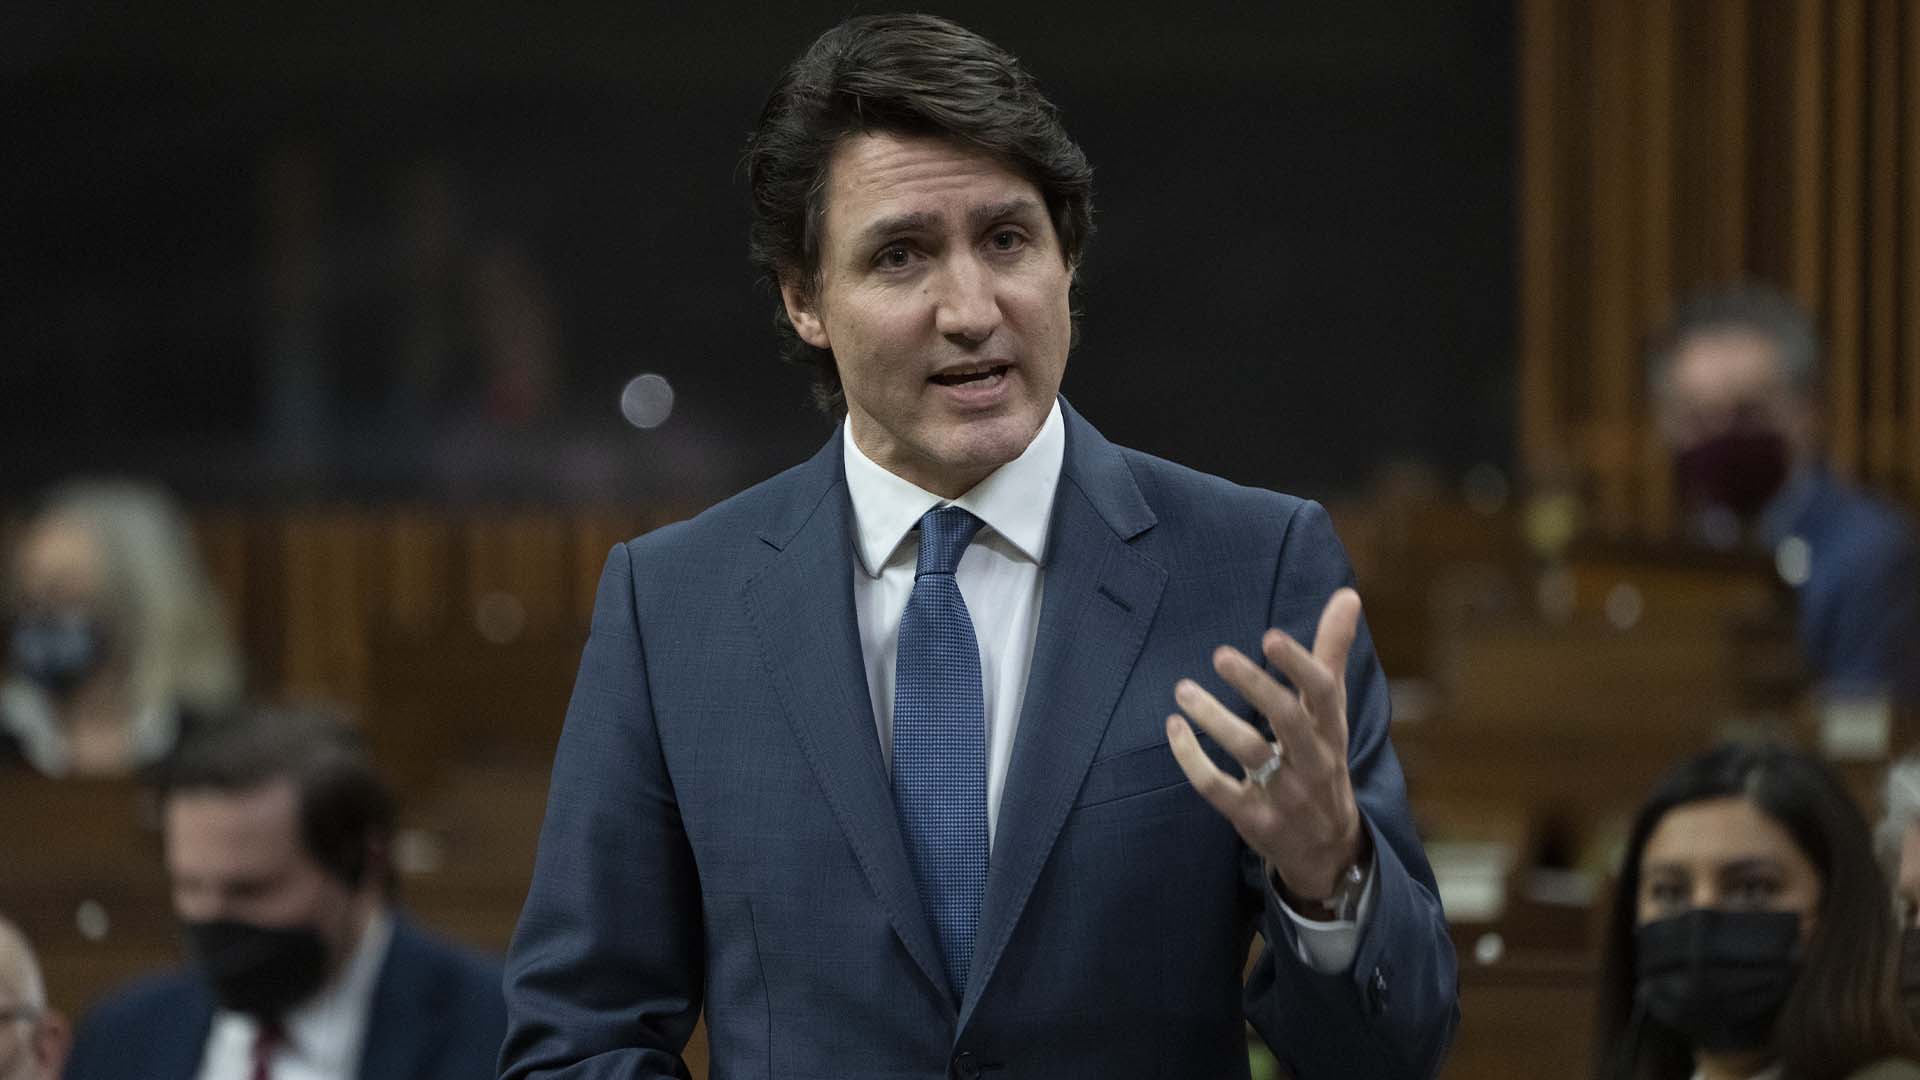 Le premier ministre Justin Trudeau se lève pendant la période des questions, le lundi 21 février 2022 à Ottawa.